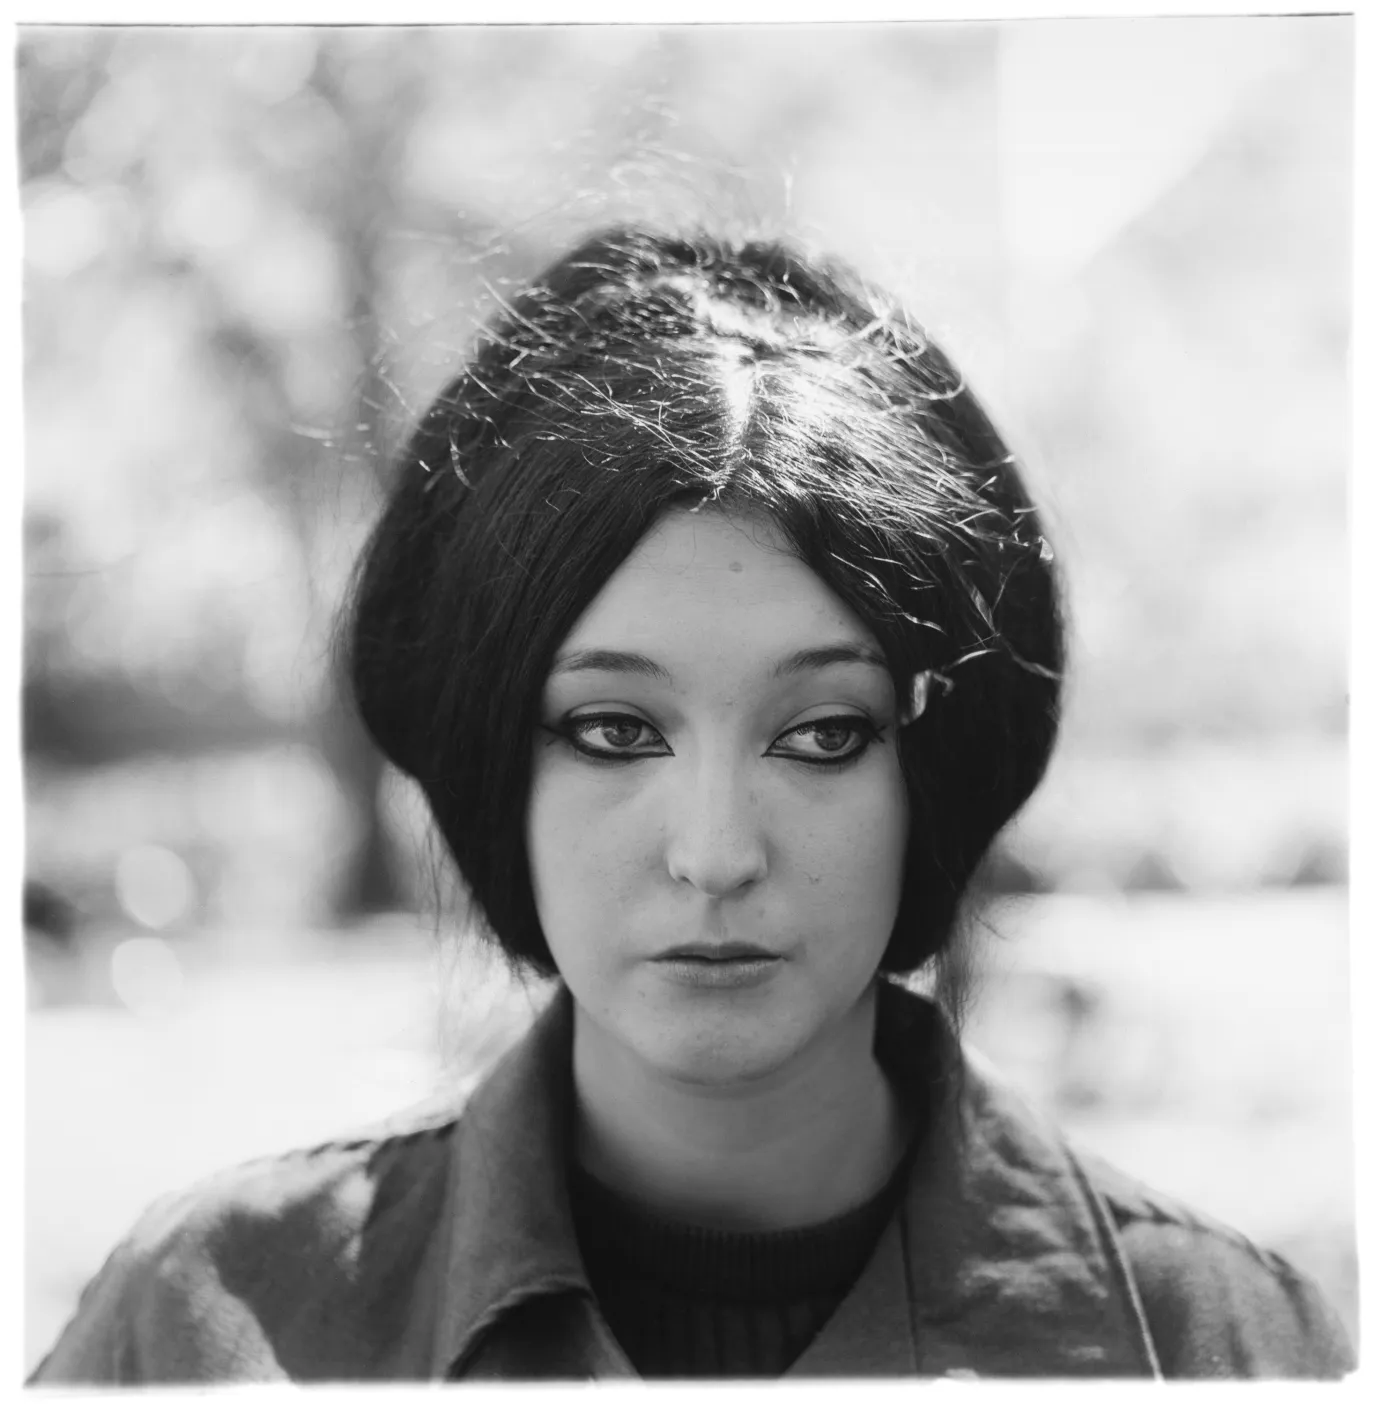  Woman with eyeliner, N.Y.C. 1967 gelatin silver print, 20 x 16 inches (sheet) [50.8 x 40.6 cm]